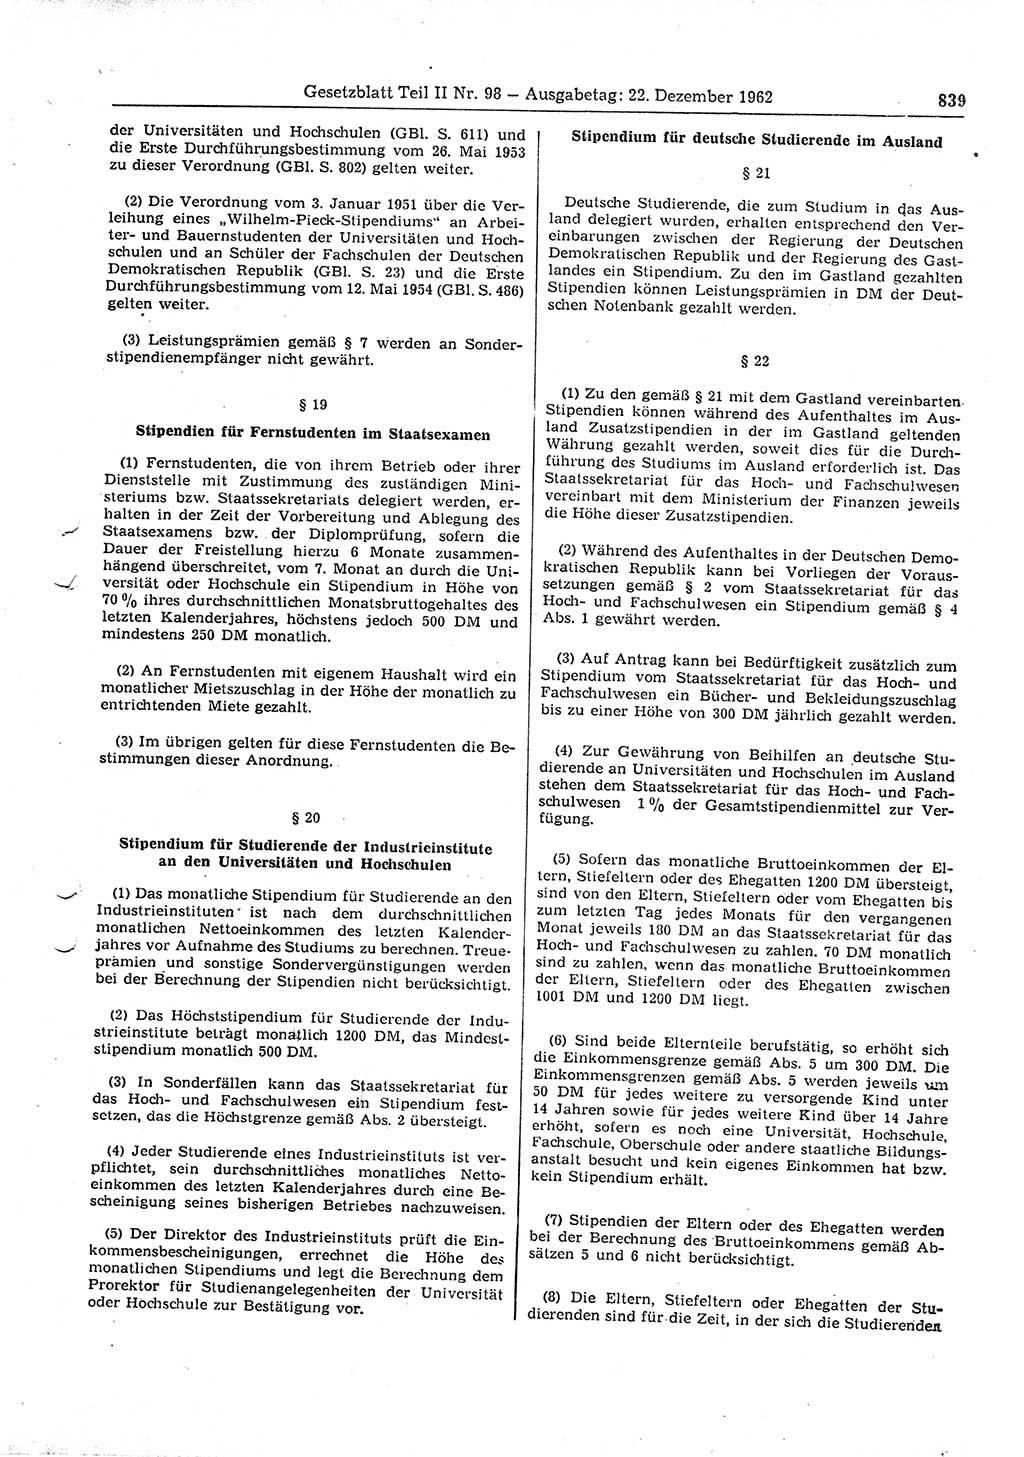 Gesetzblatt (GBl.) der Deutschen Demokratischen Republik (DDR) Teil ⅠⅠ 1962, Seite 839 (GBl. DDR ⅠⅠ 1962, S. 839)